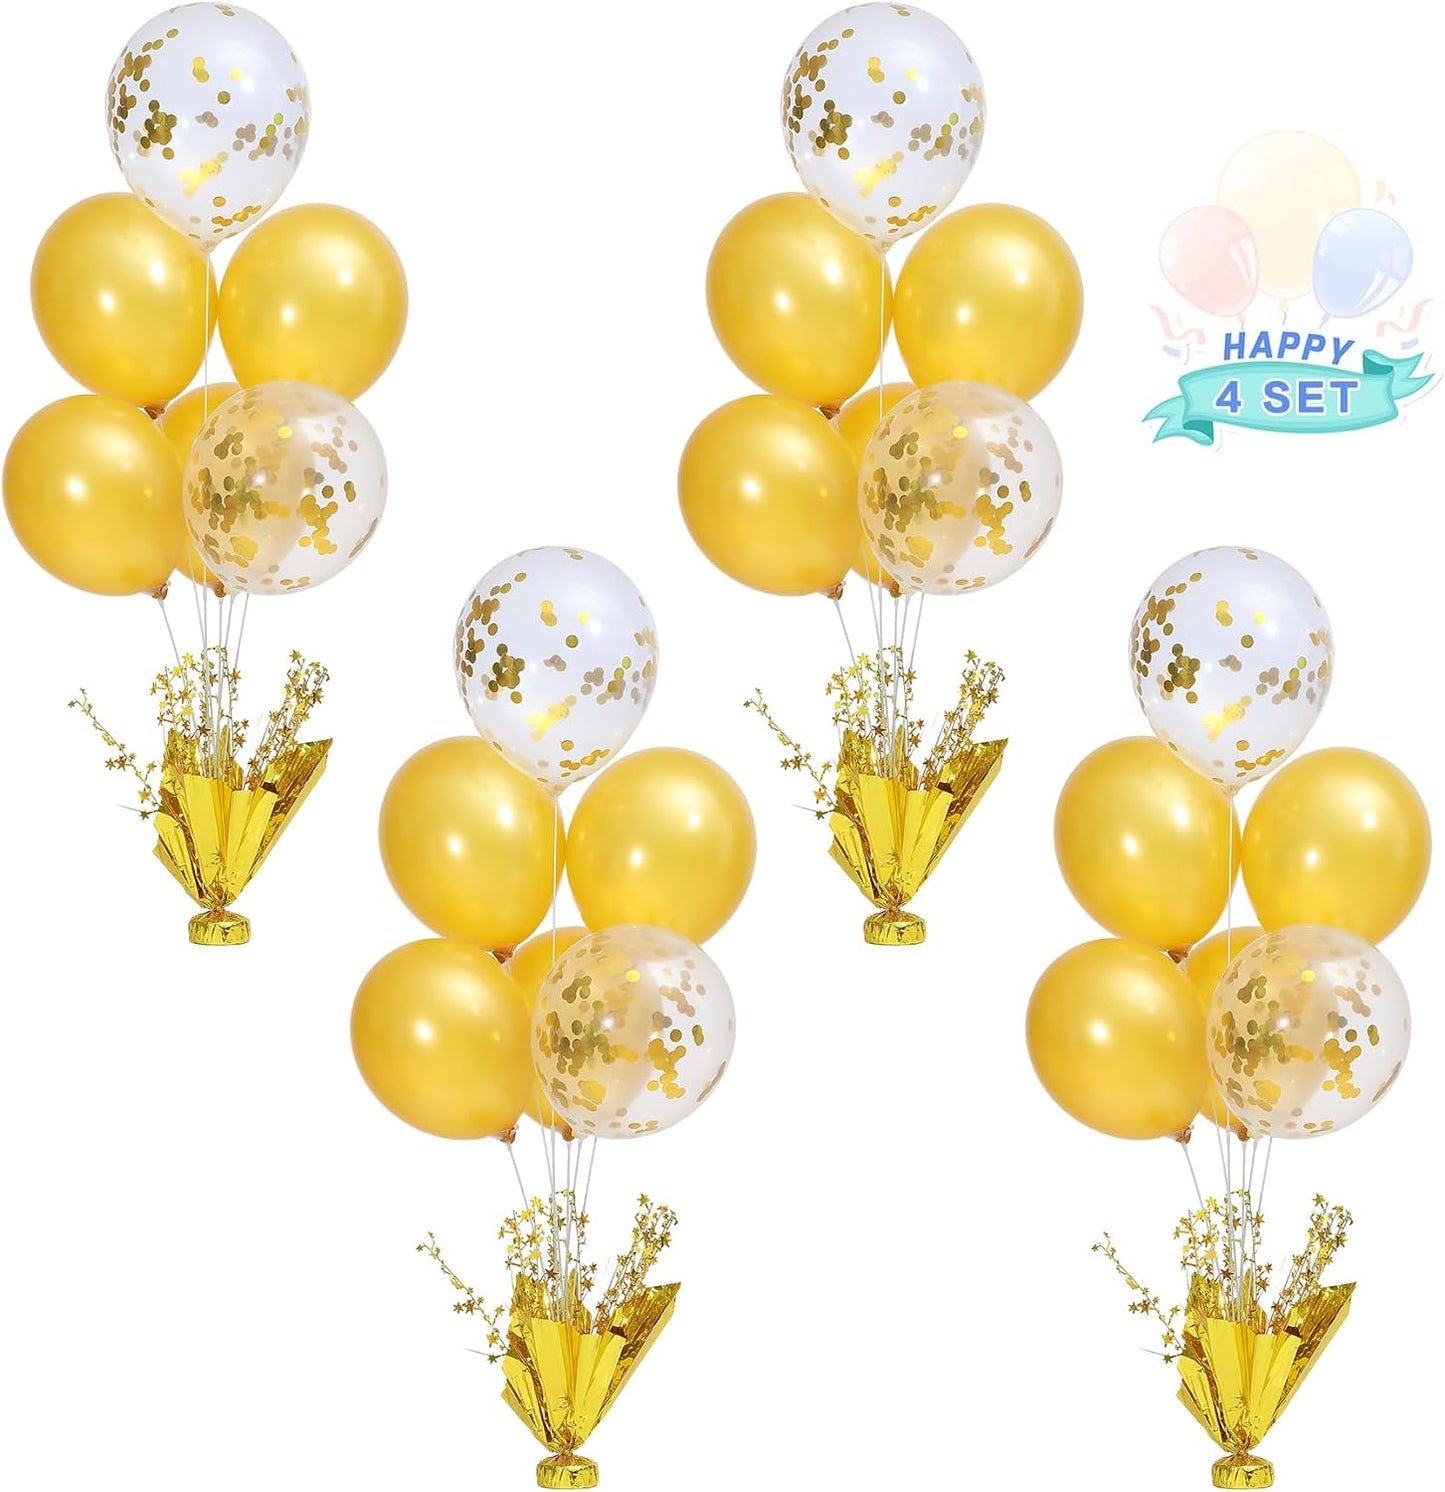 Golden Table Centerpiece Balloons